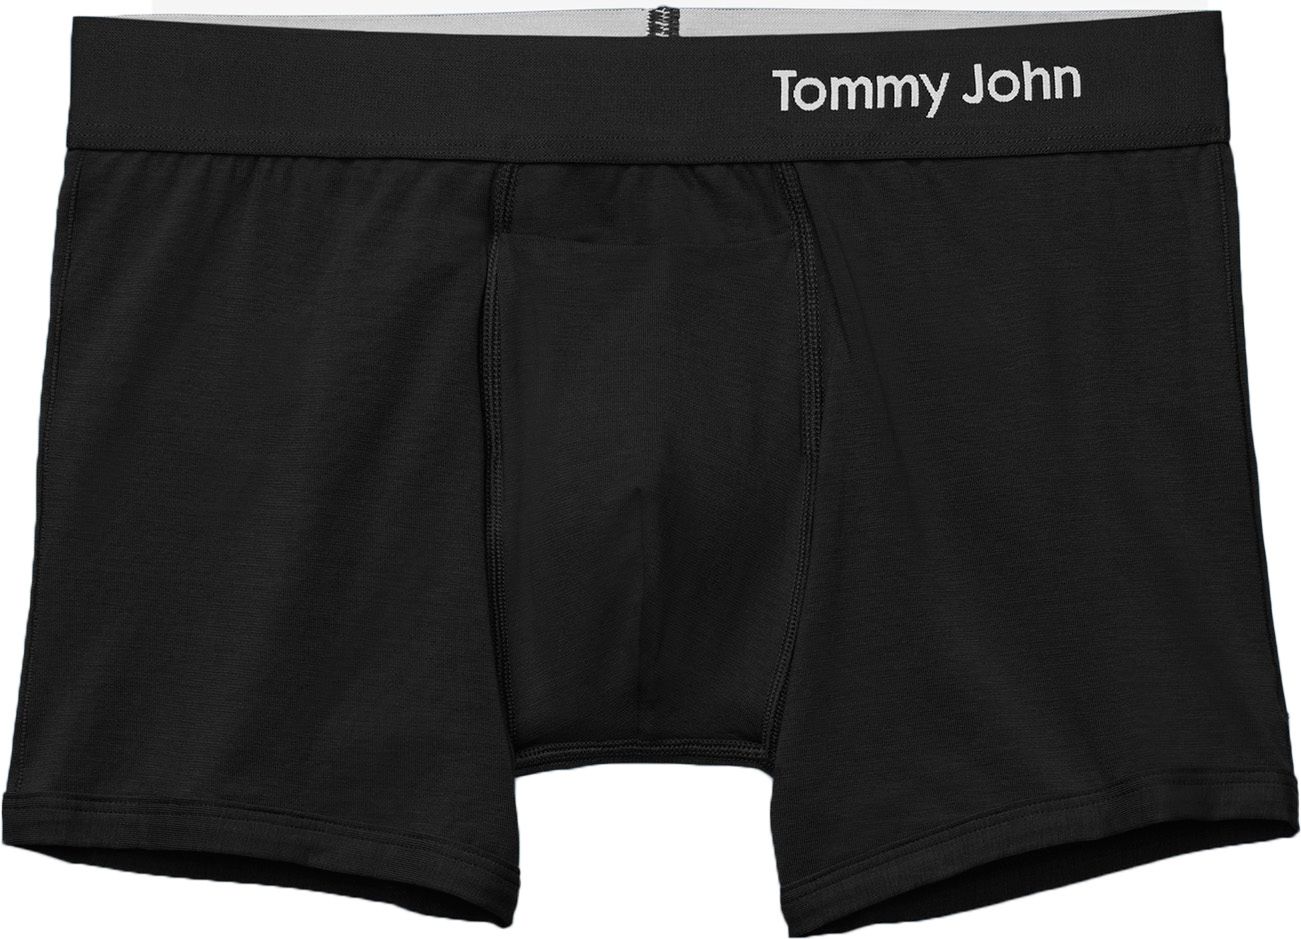  Tommy John: Packs